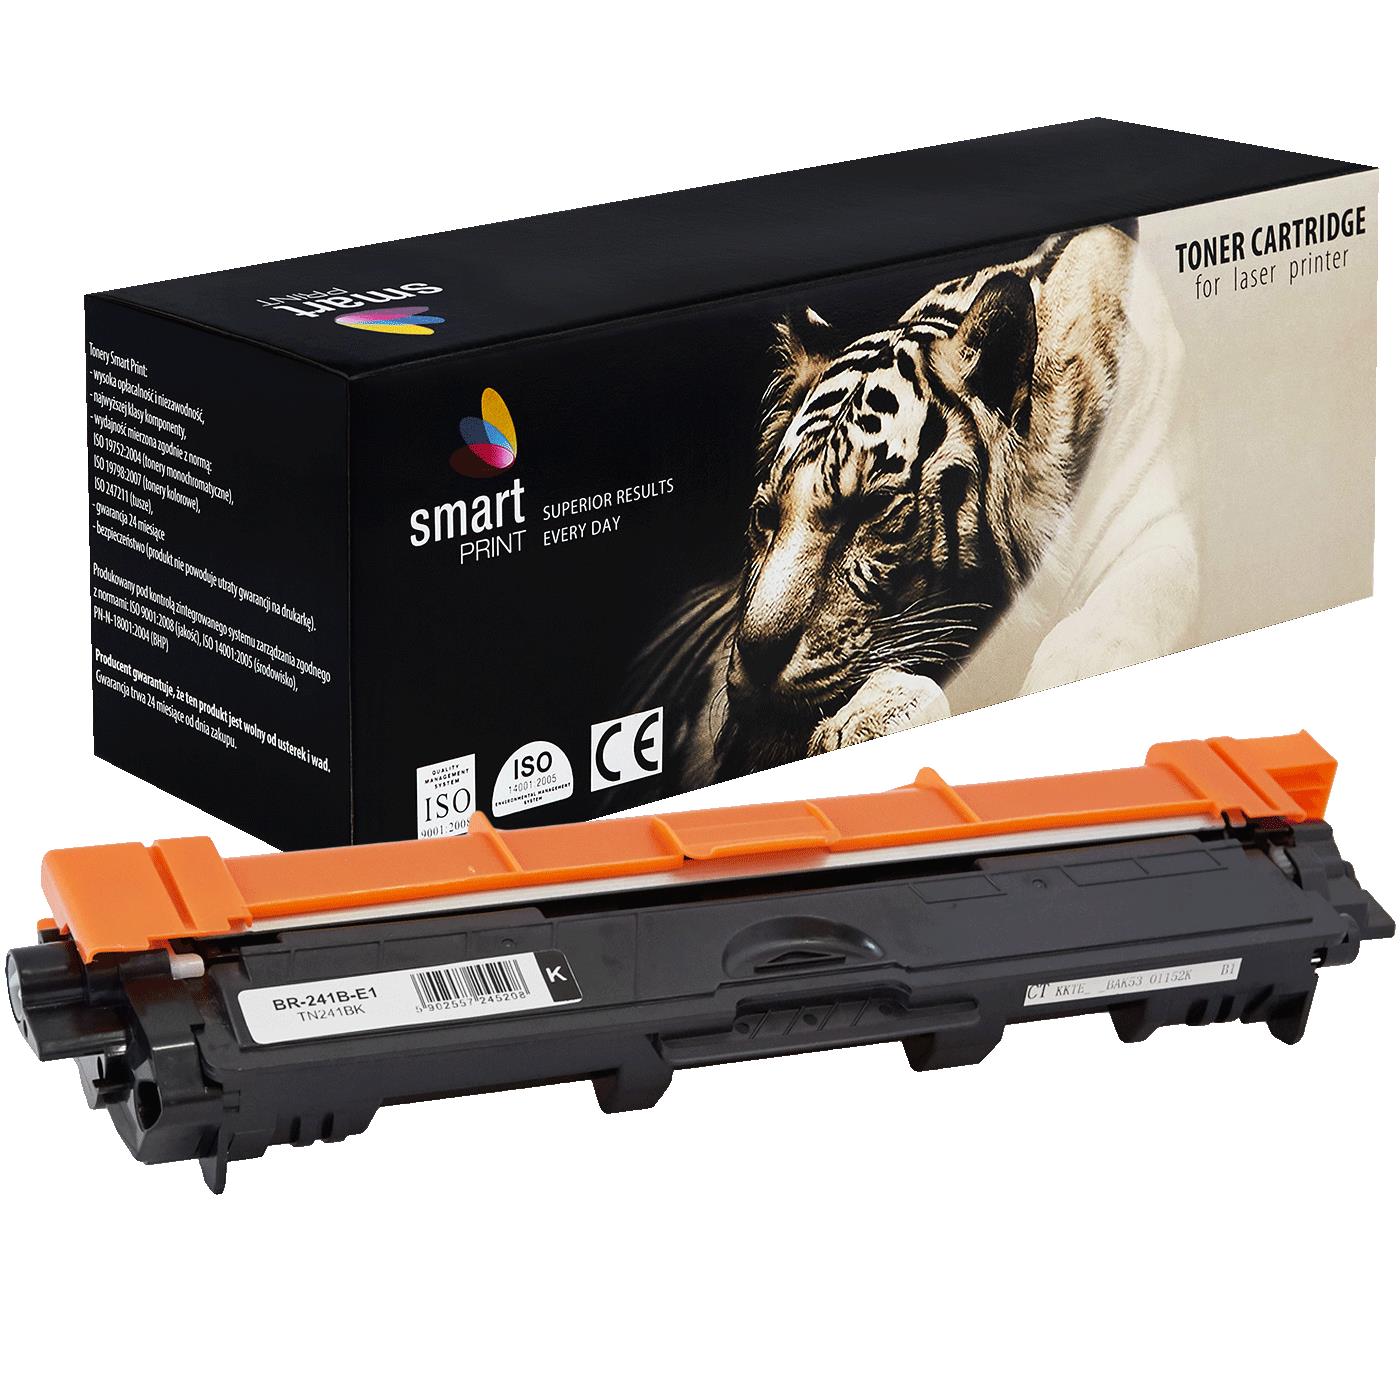 съвместима тонер касета за принтери и печатащи устройства на Brother 9020CDN Toner BR-241B | TN241BK / TN-241 / TN245. Ниски цени, прецизно изпълнение, високо качество.